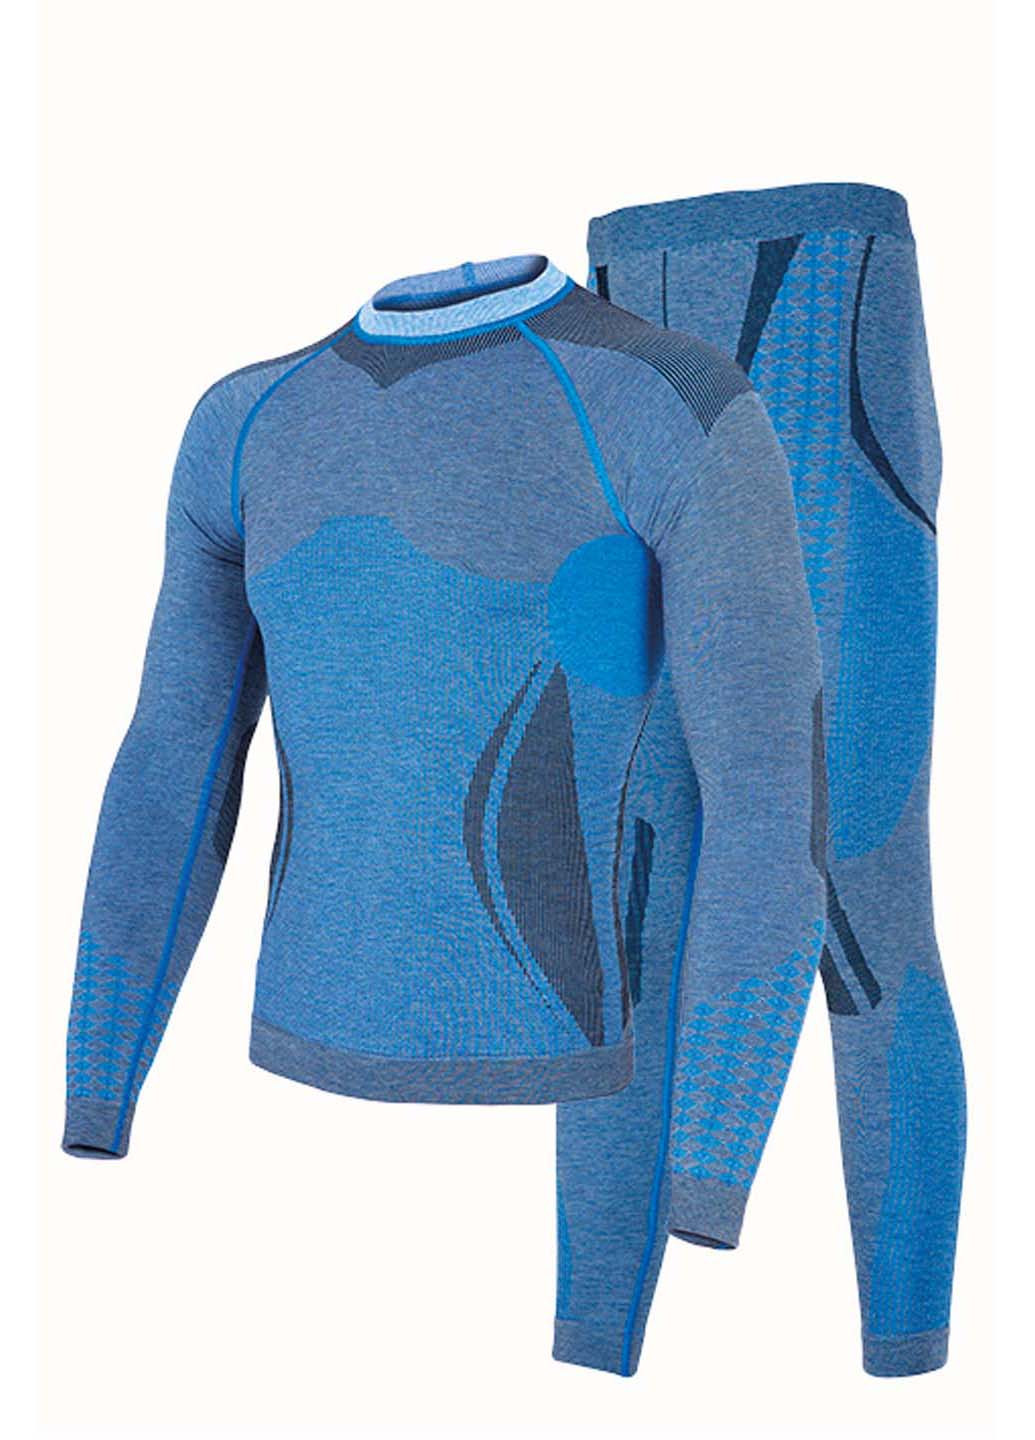 Комплект термобелья Hanna Style геометрический синий спортивный шерсть, полиамид